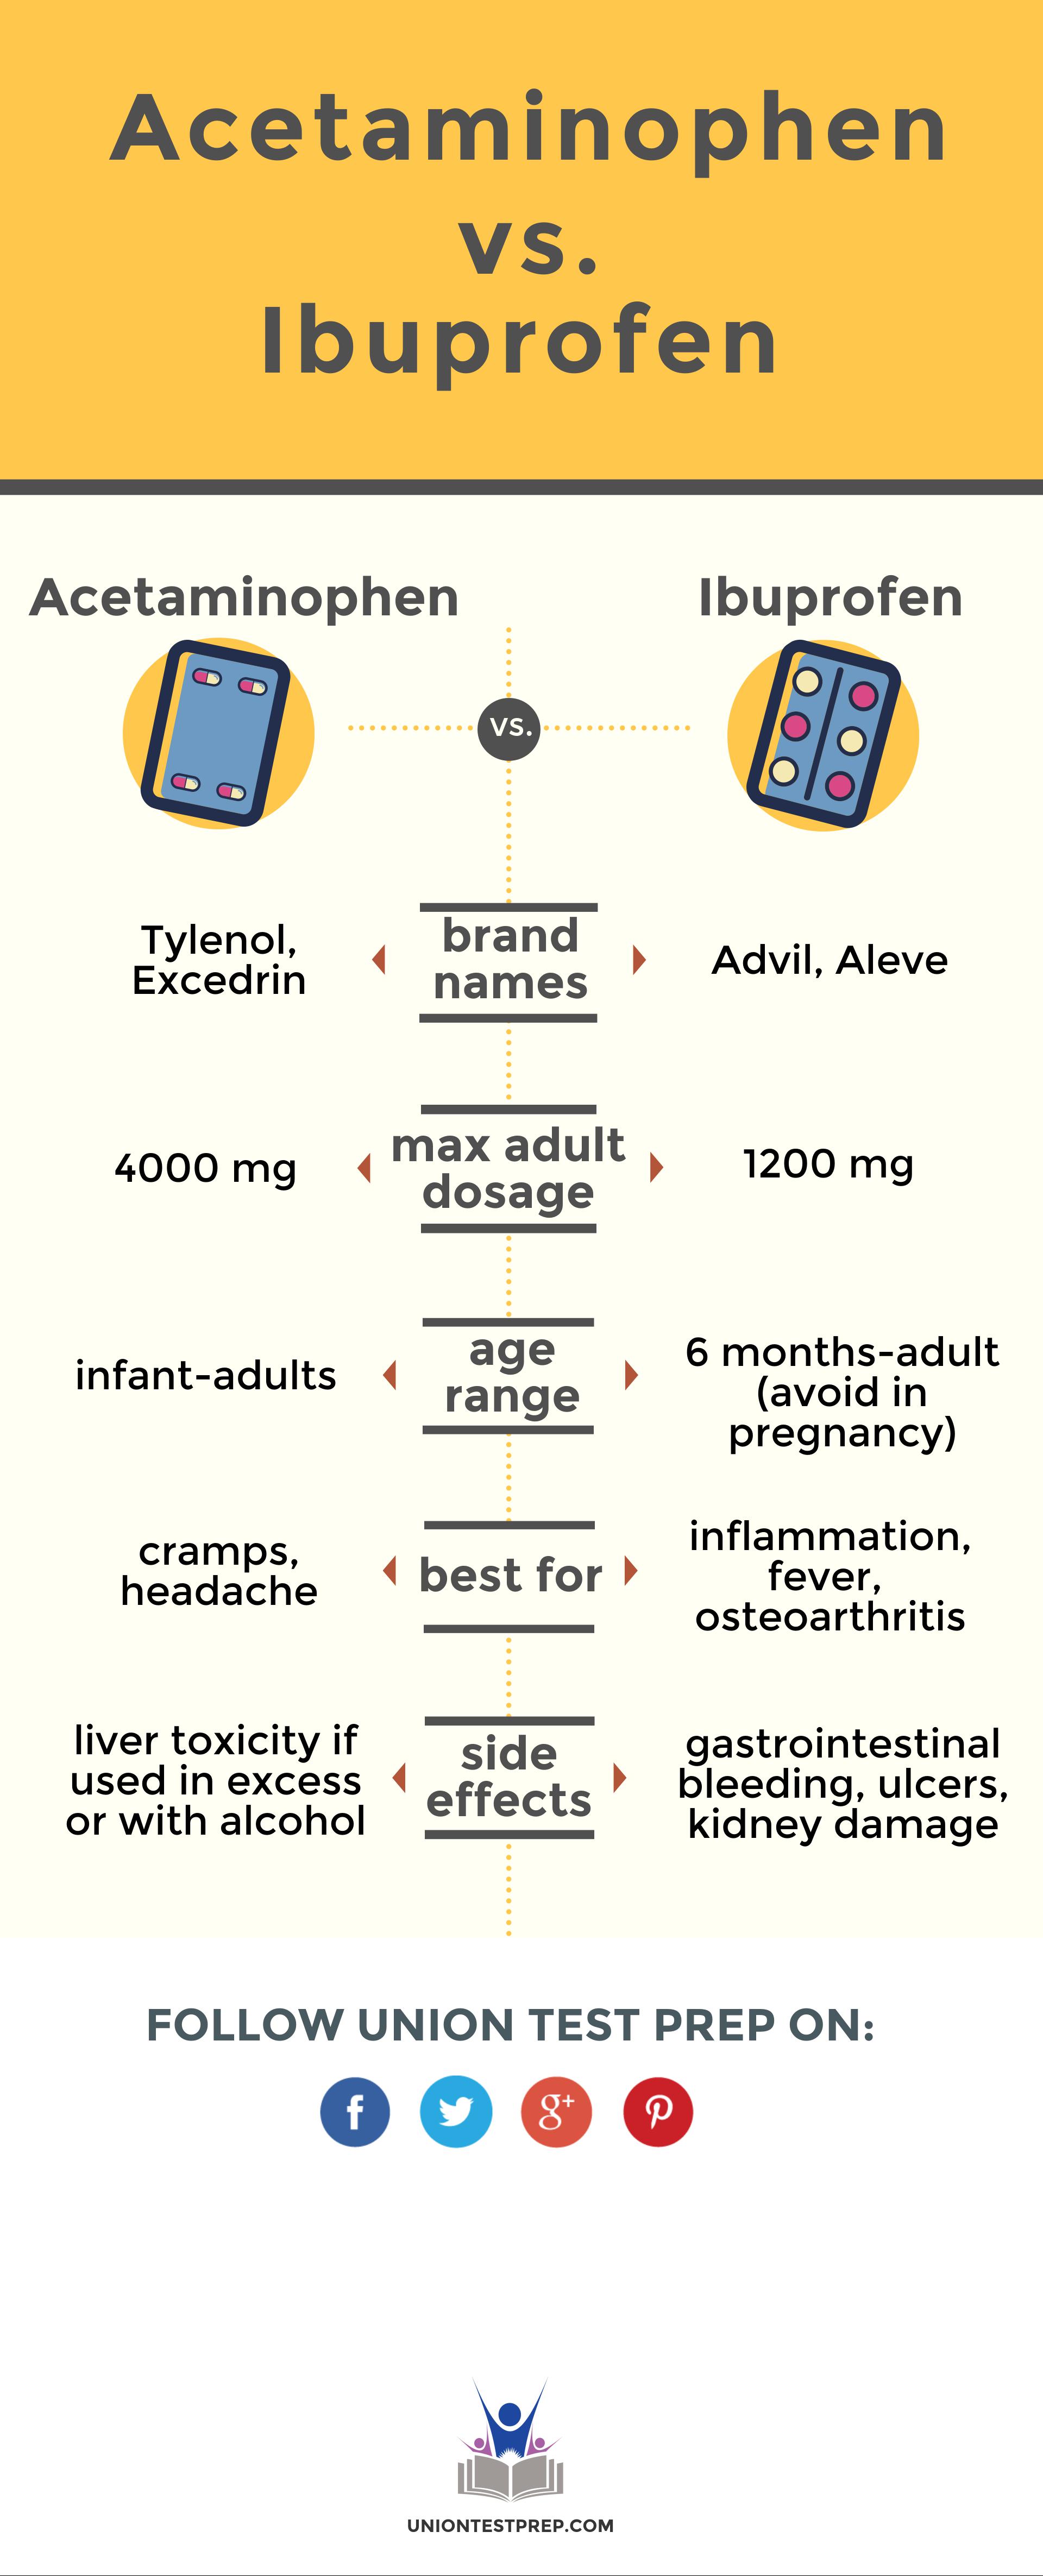 Acetaminophen vs ibuprofen